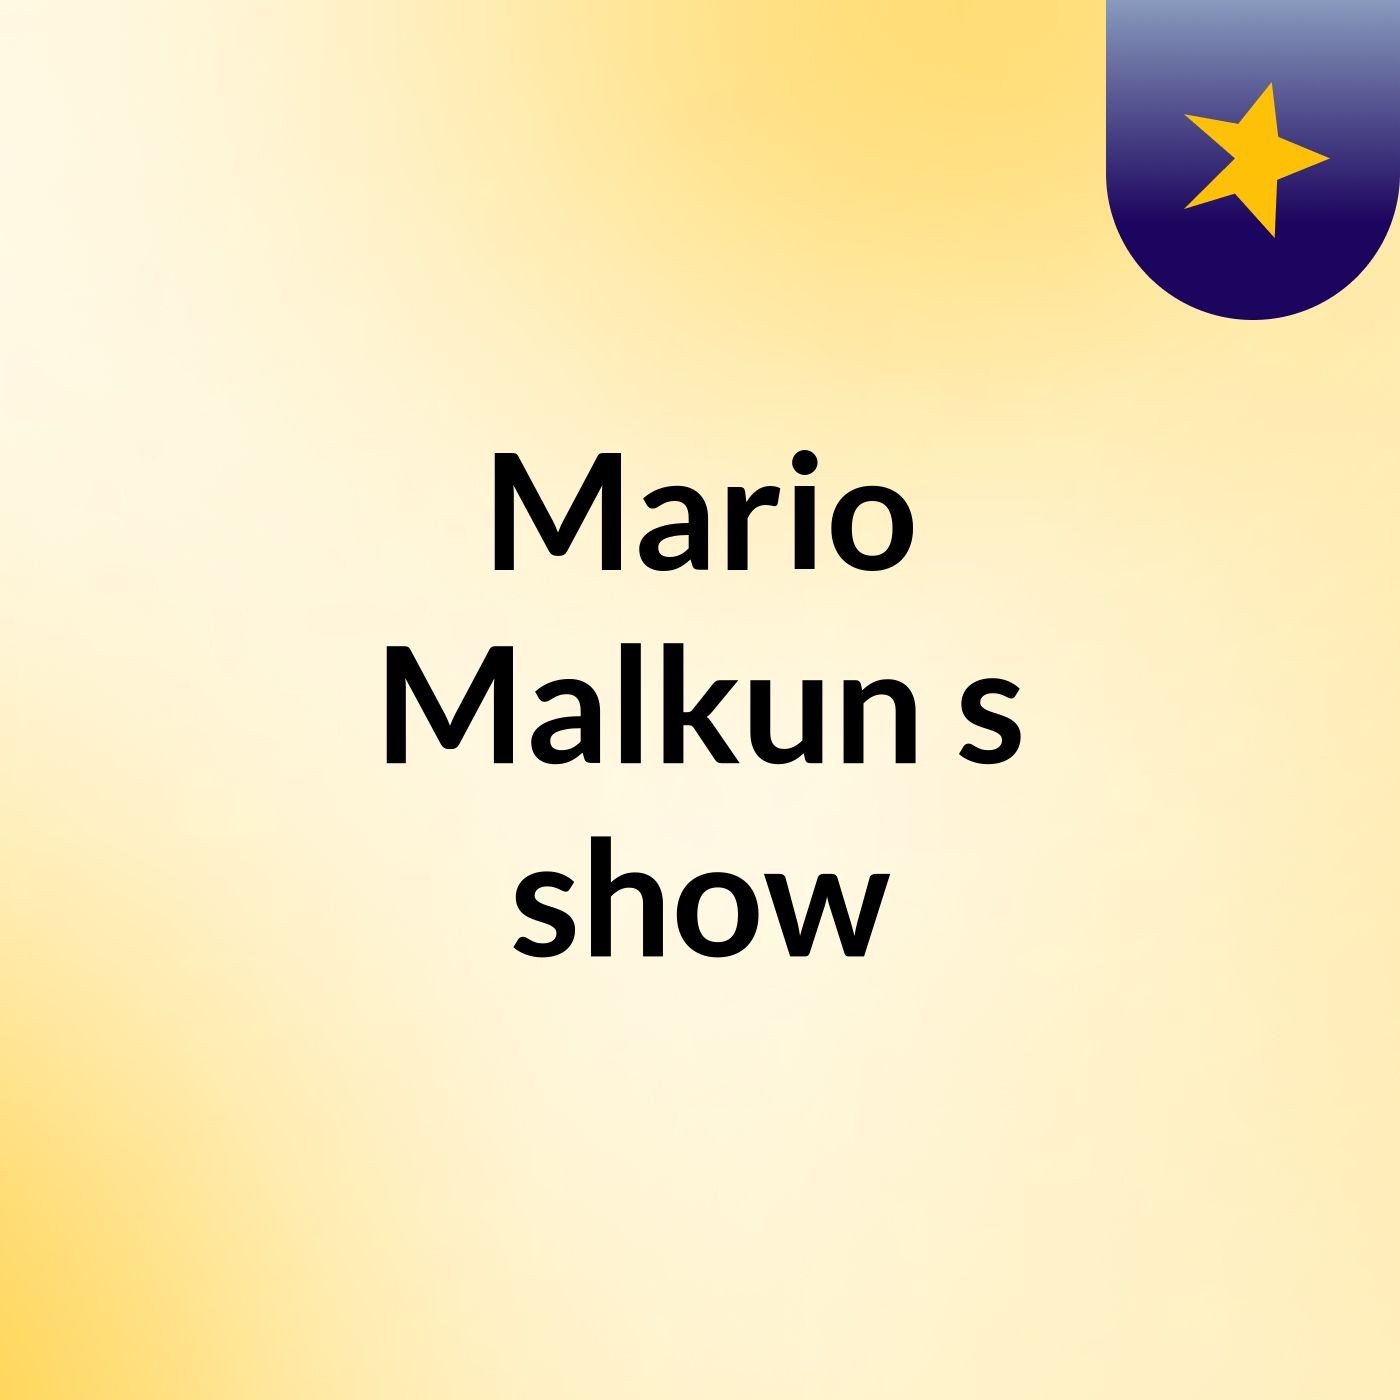 Mario Malkun's show